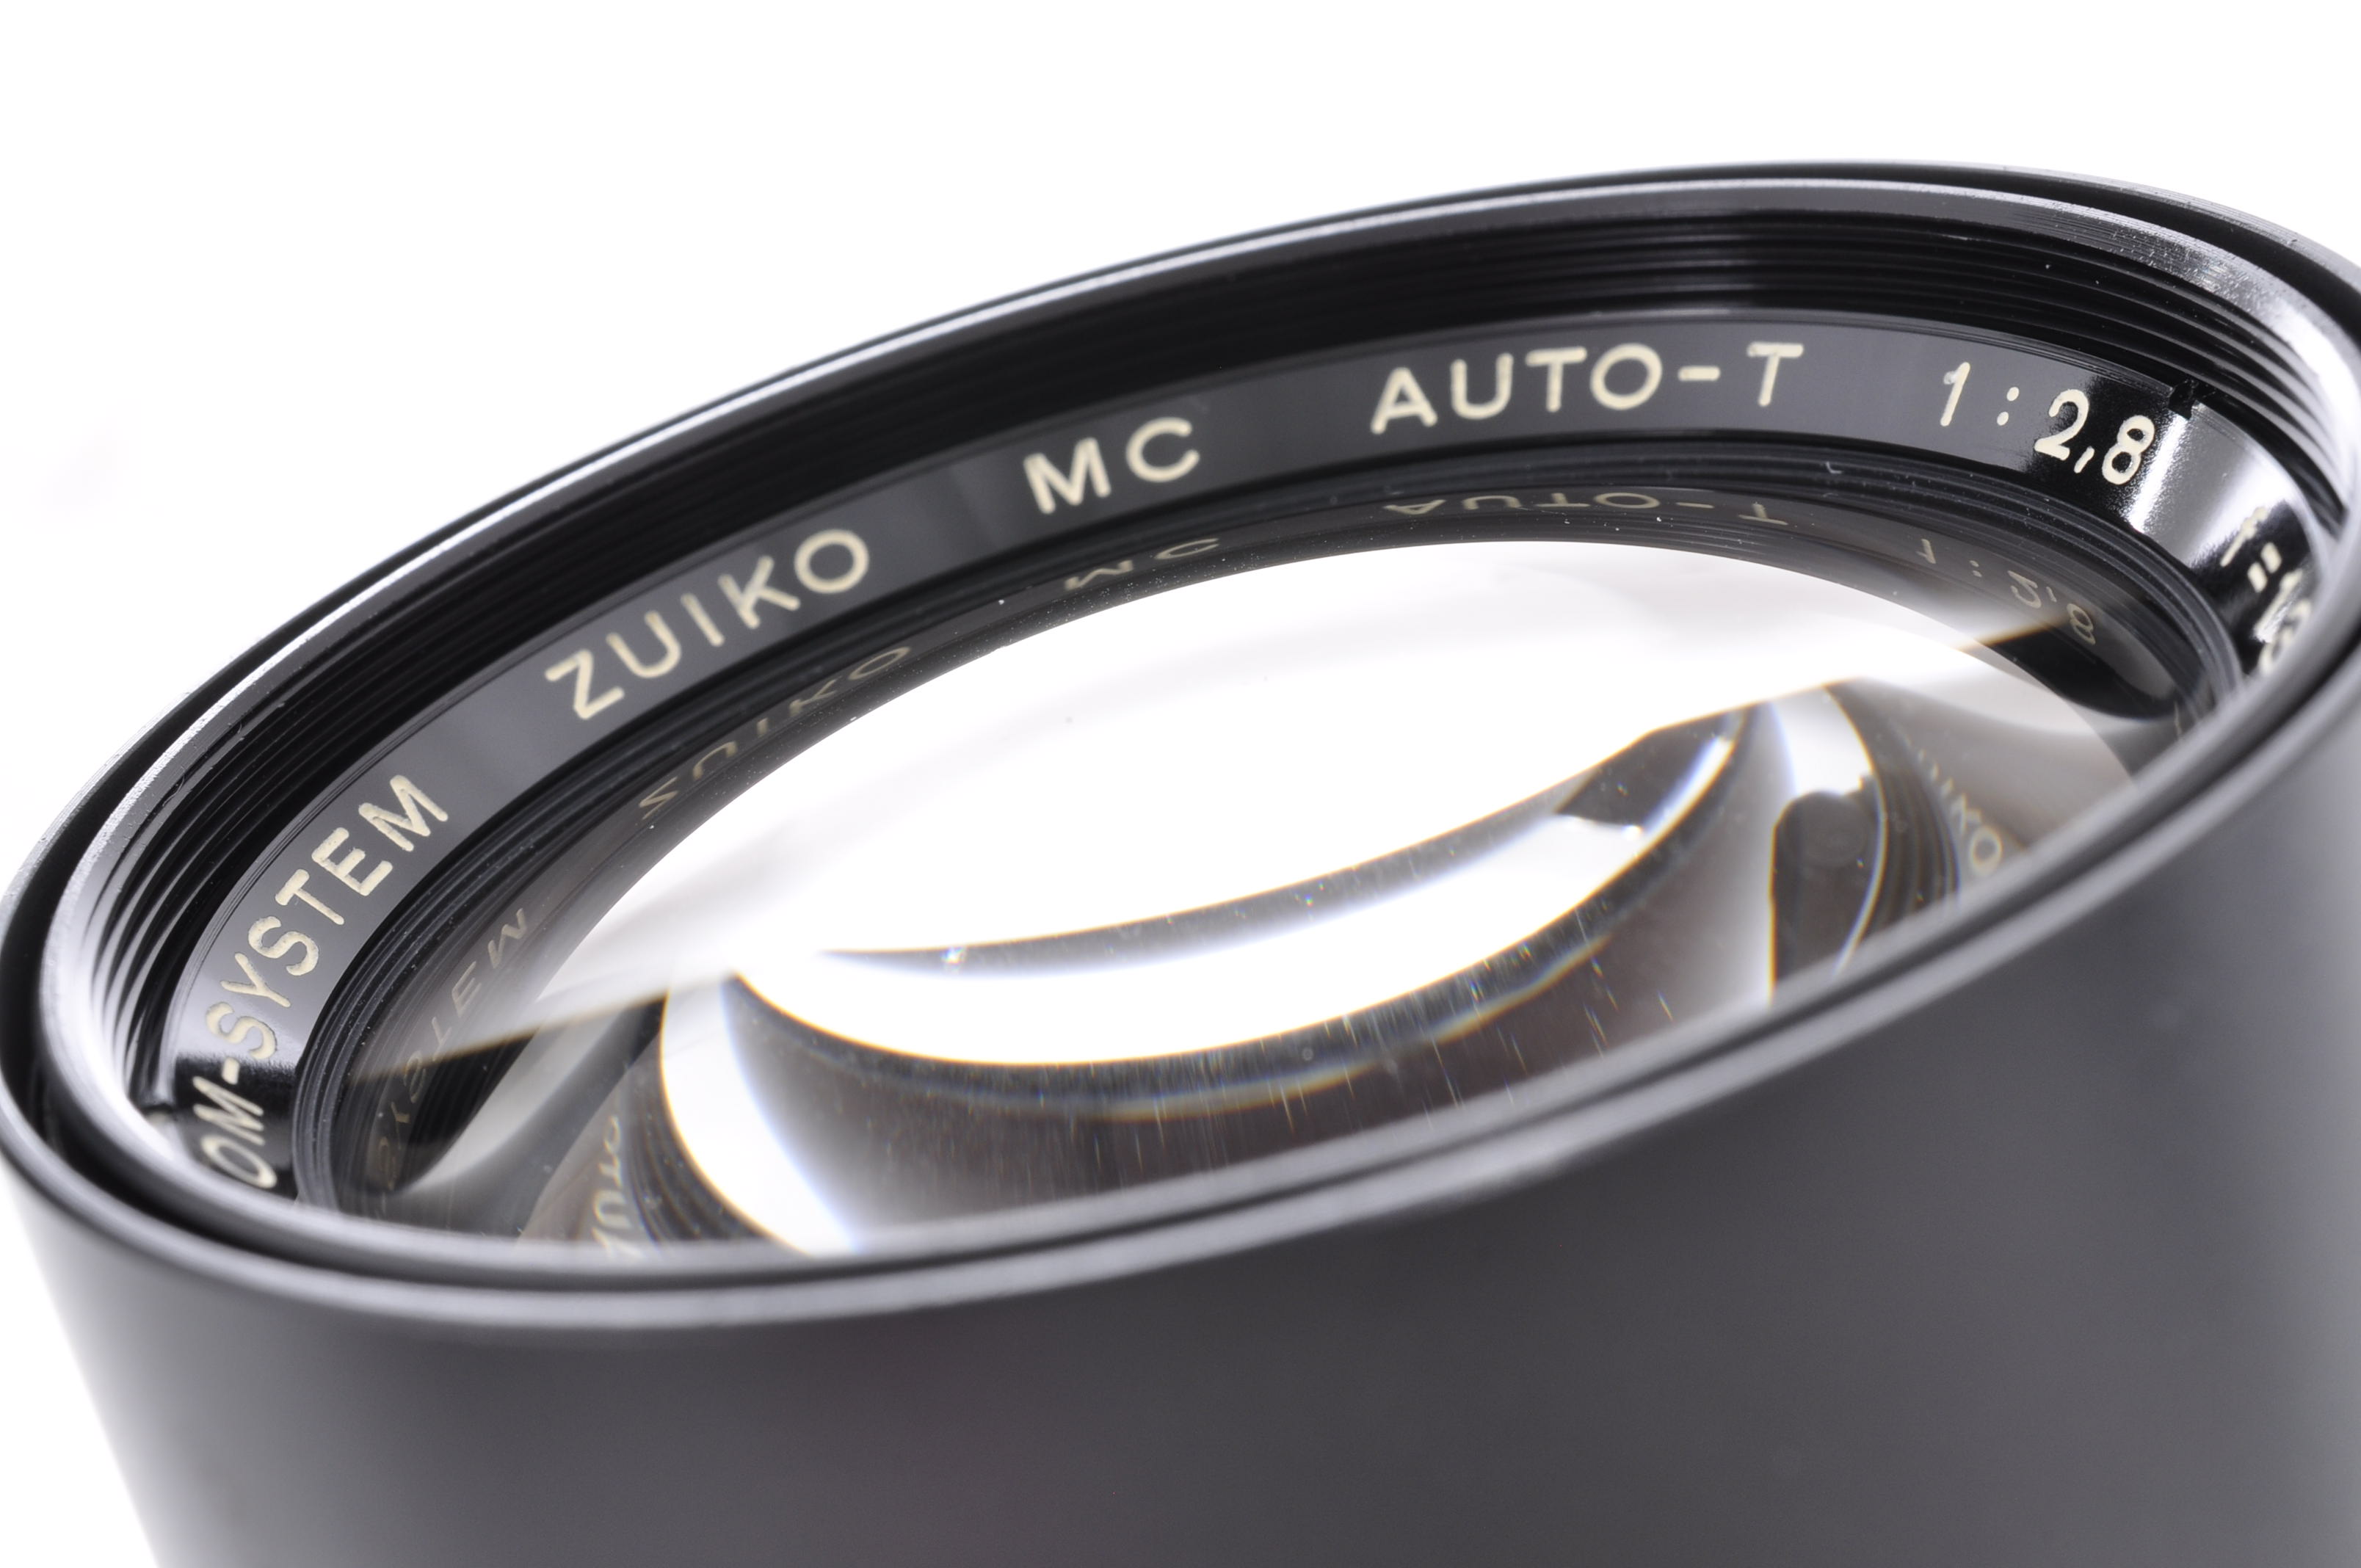 Olympus OM-System Zuiko Auto-T MC 135mm F/2.8 Lens w/Cap [Near Mint] From Japan img09